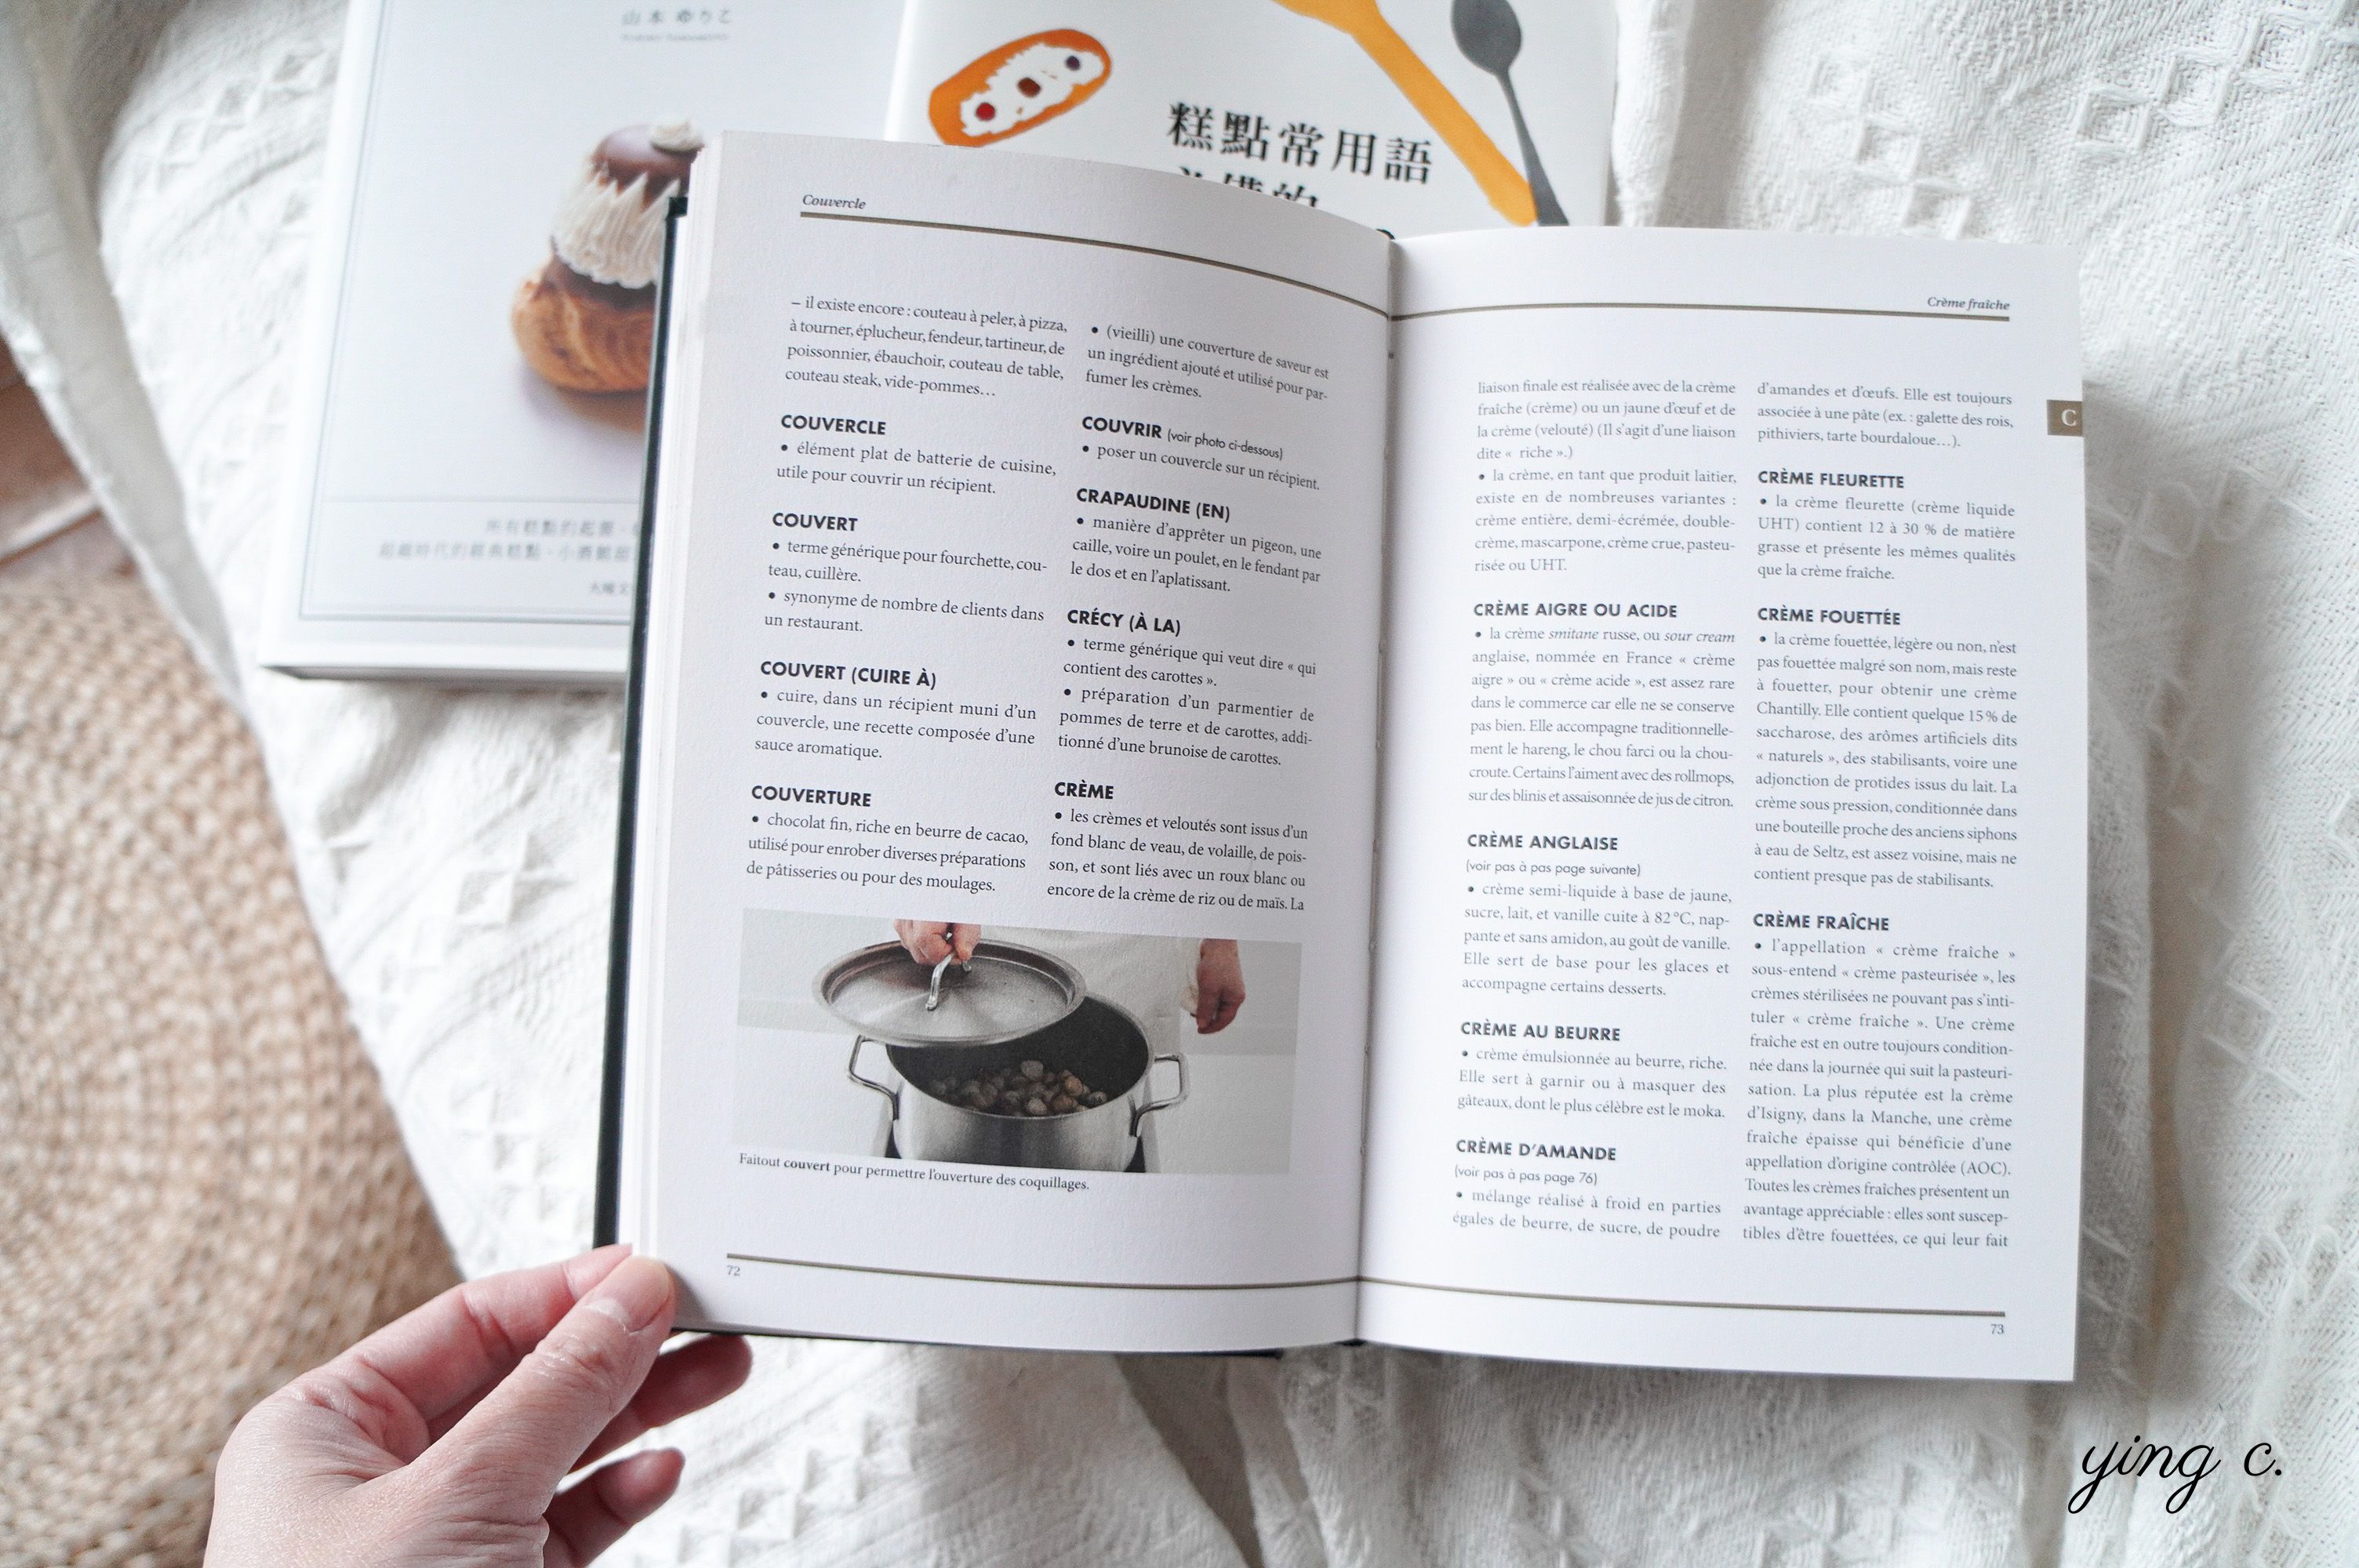 由法國Ferrandi高等廚藝學校出版的《Le lexique culinaire de Ferrandi》，收錄了1,500個烹飪用語與200幀照片，能夠幫助所有正在、或想要學習法式料理的人快速進入